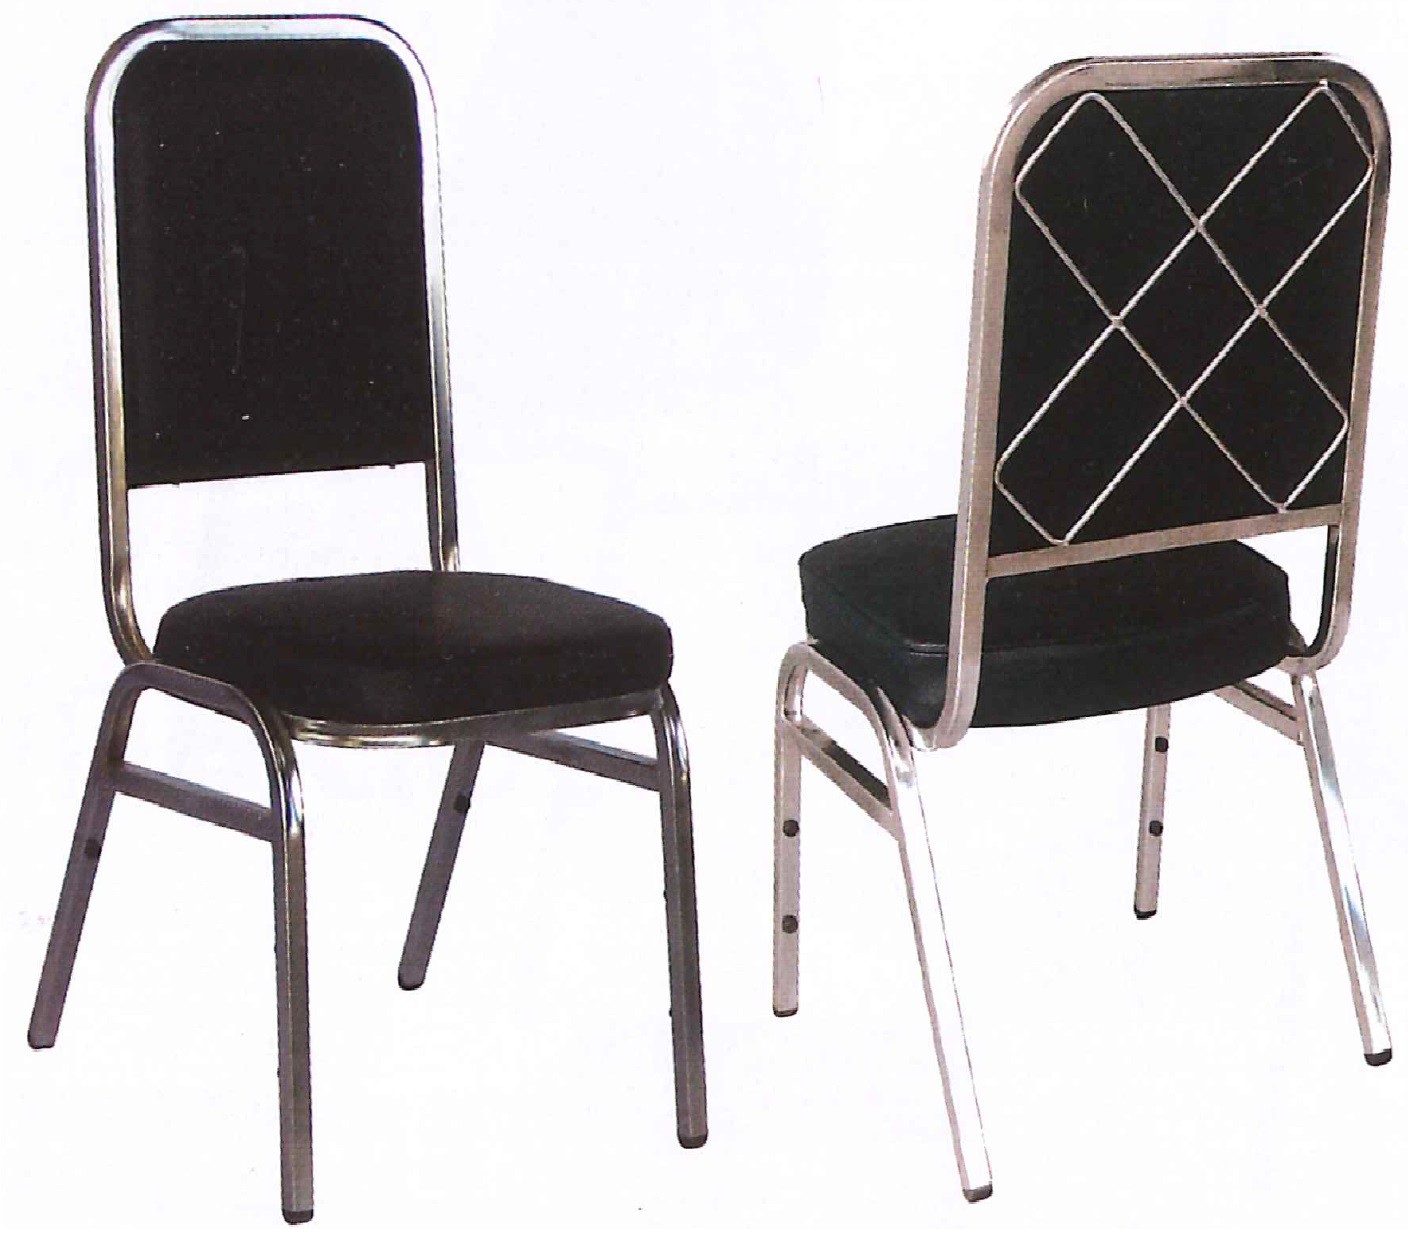 DG/DG7000A,เก้าอี้จัดเลี้ยงหลังต่าข่ายเหล็กเหลี่ยม,เก้าอี้จัดเลี้ยง,เก้าอี้งาน,เก้าอี้ห้องประชุม,เก้าอี้สัมมนา,เก้าอี้,chair